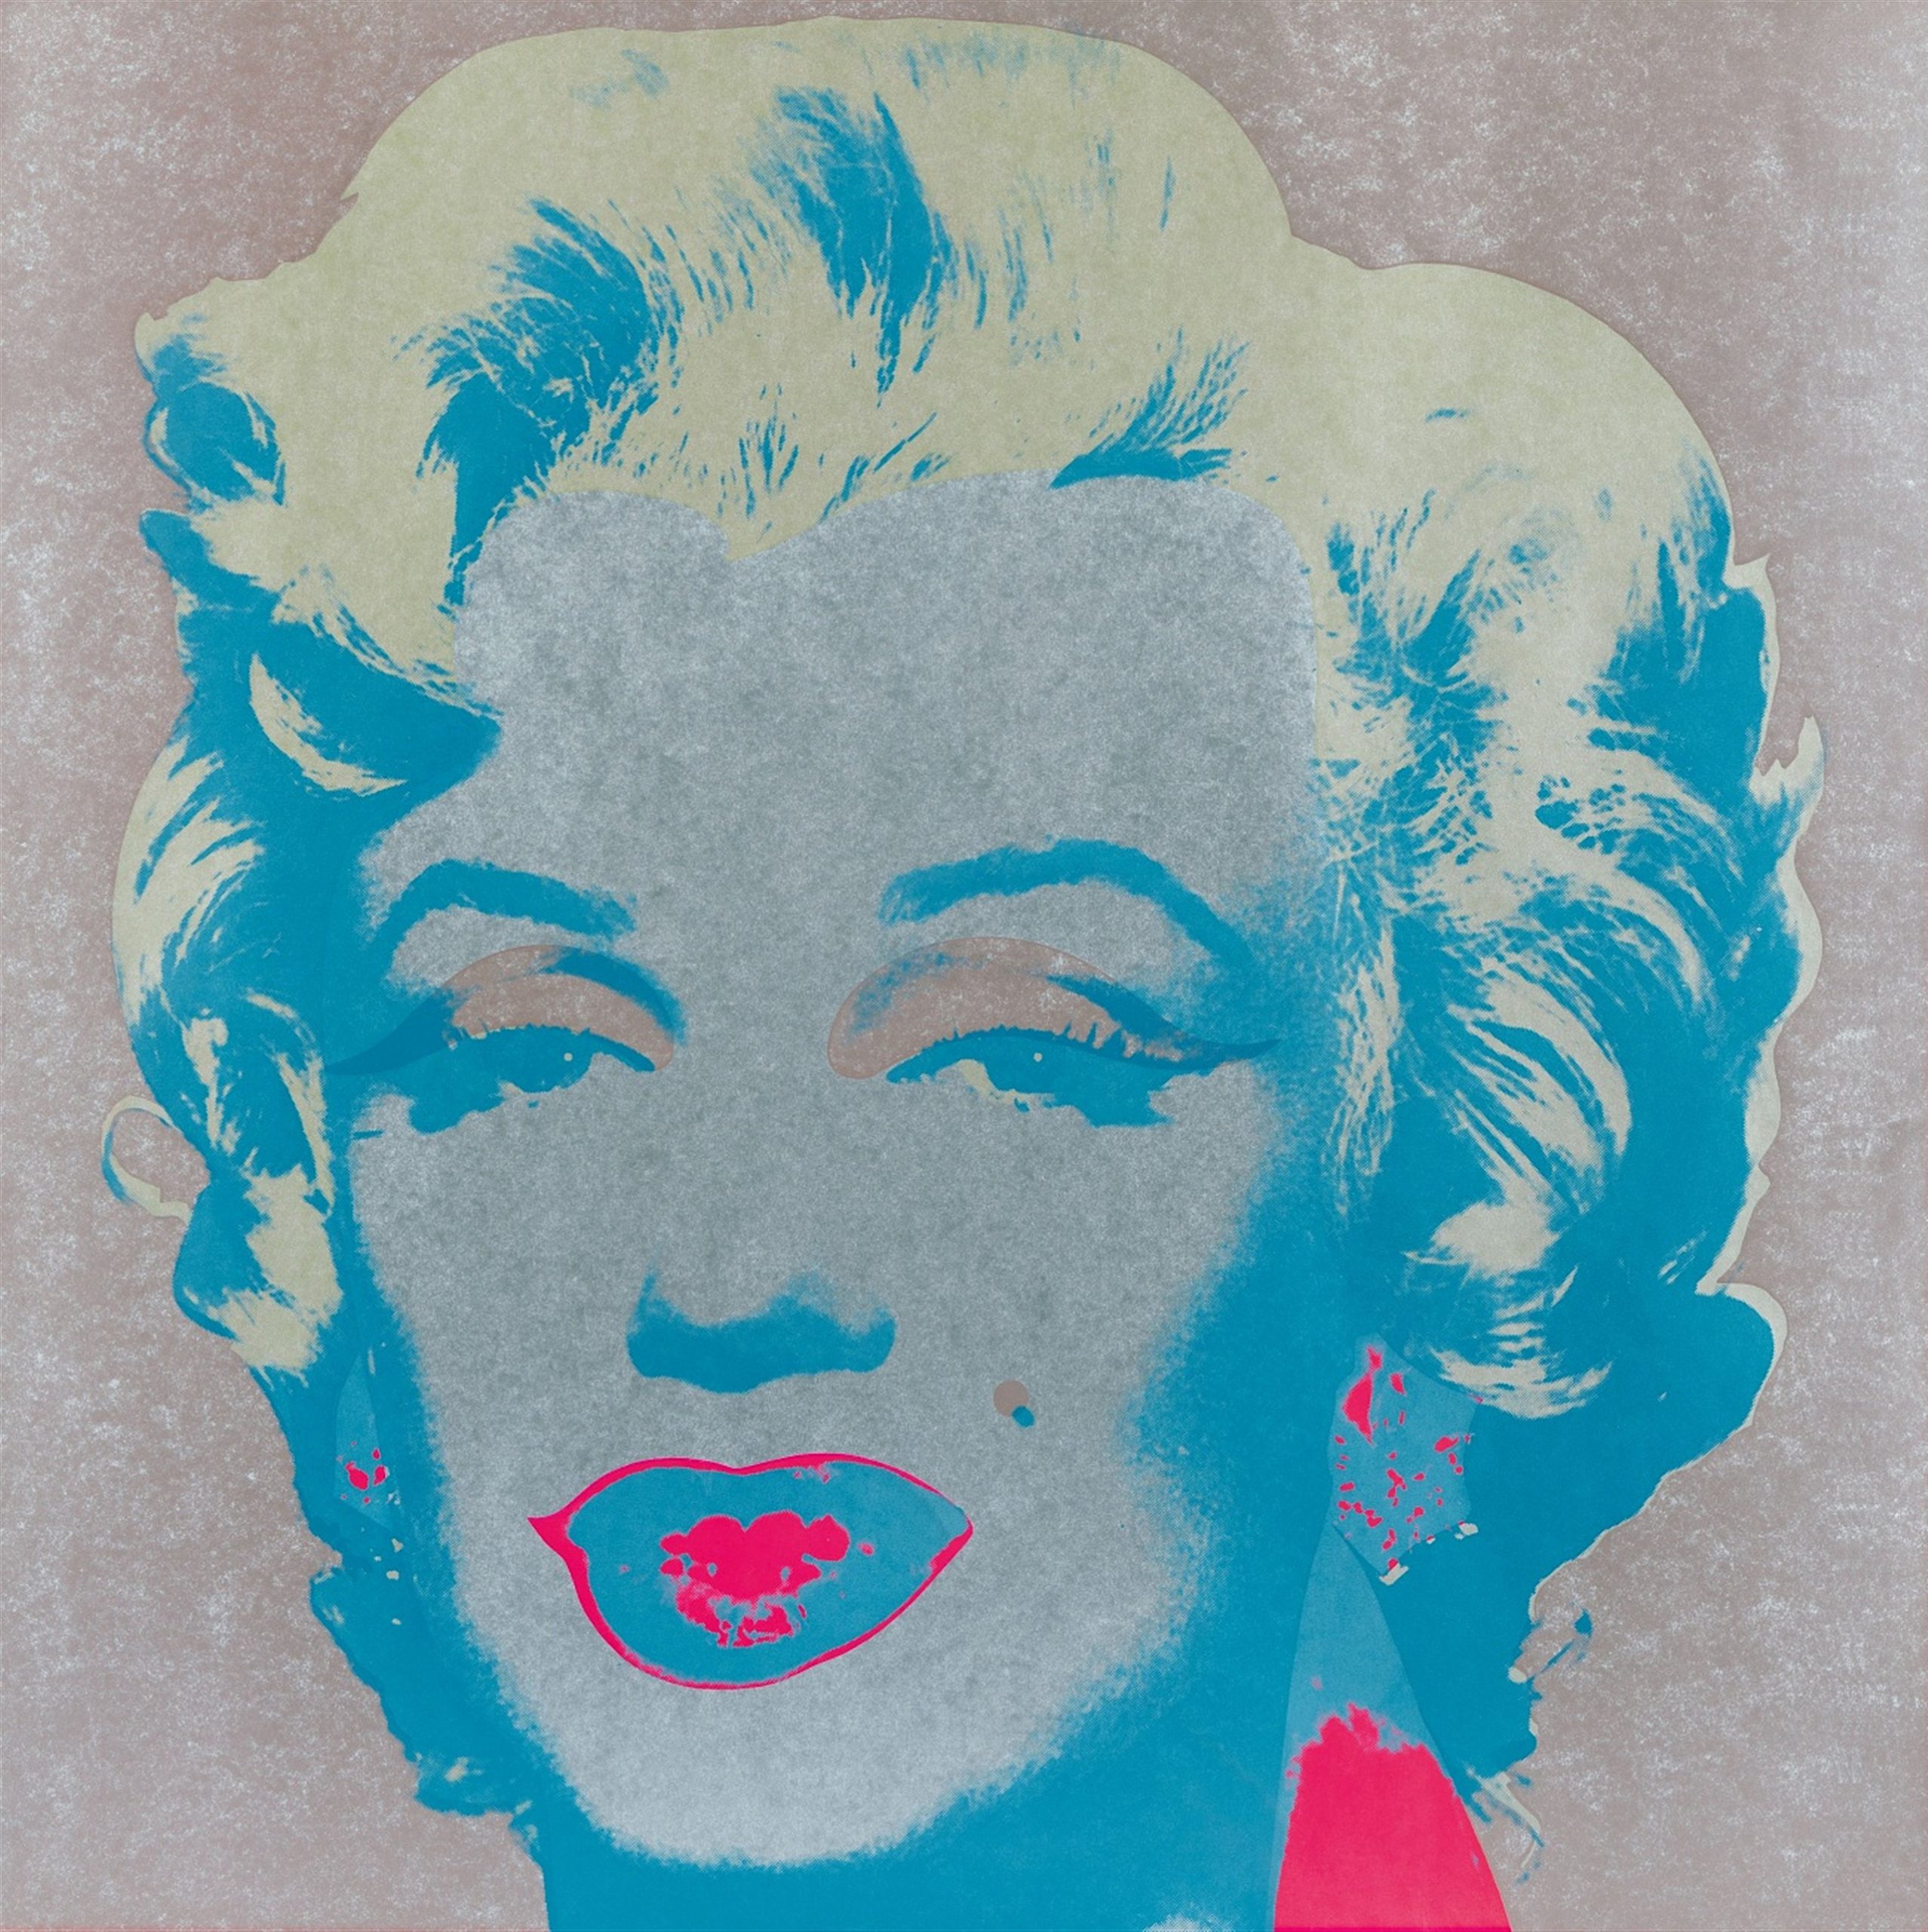 Andy Warhol, Marilyn Monroe (Marilyn), 1967 FS 26, Screen Print